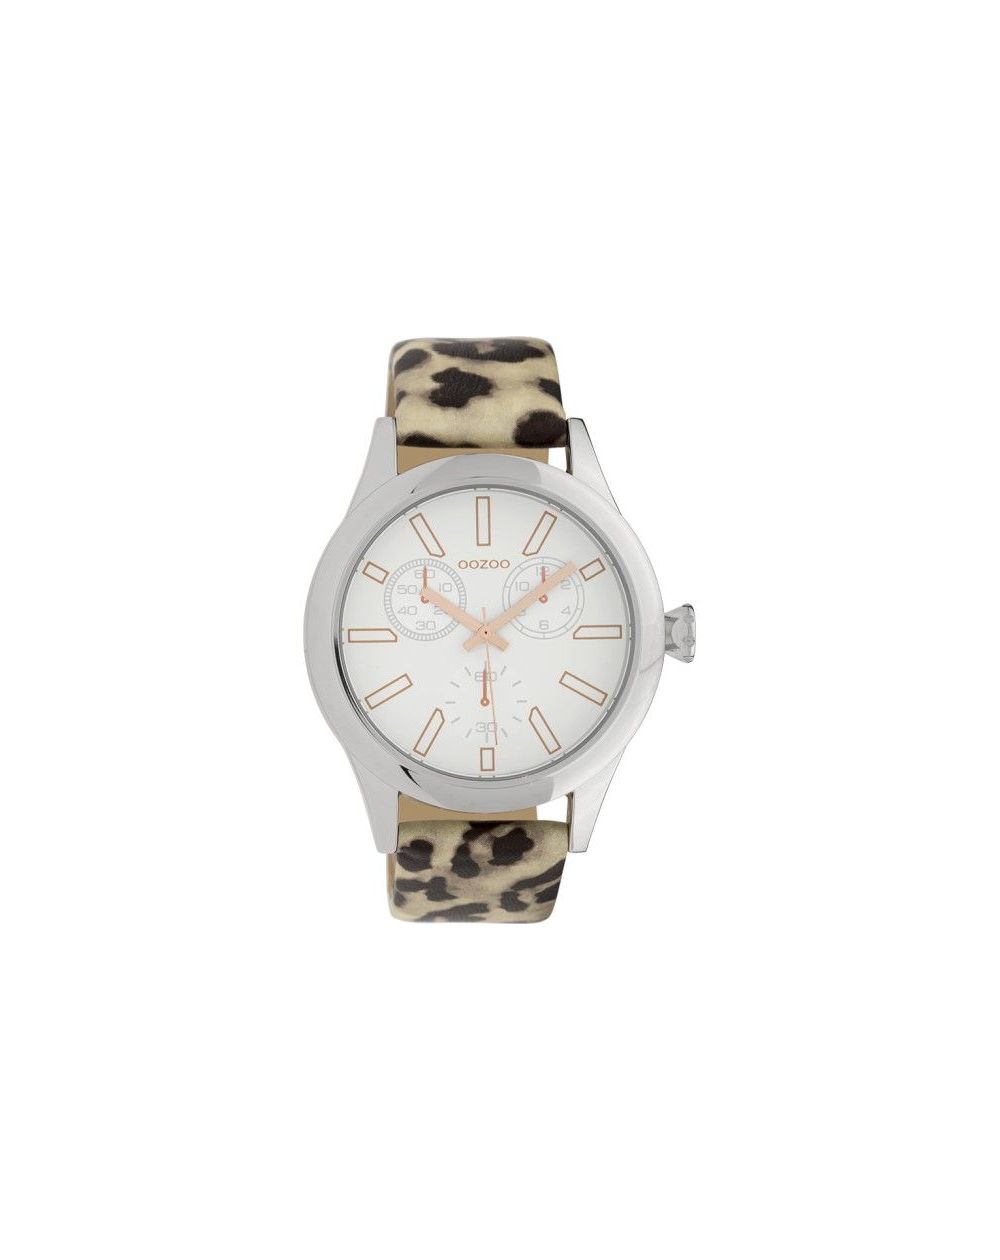 Montre Oozoo Timepieces C9795 light leopard - Marque de montre Oozoo